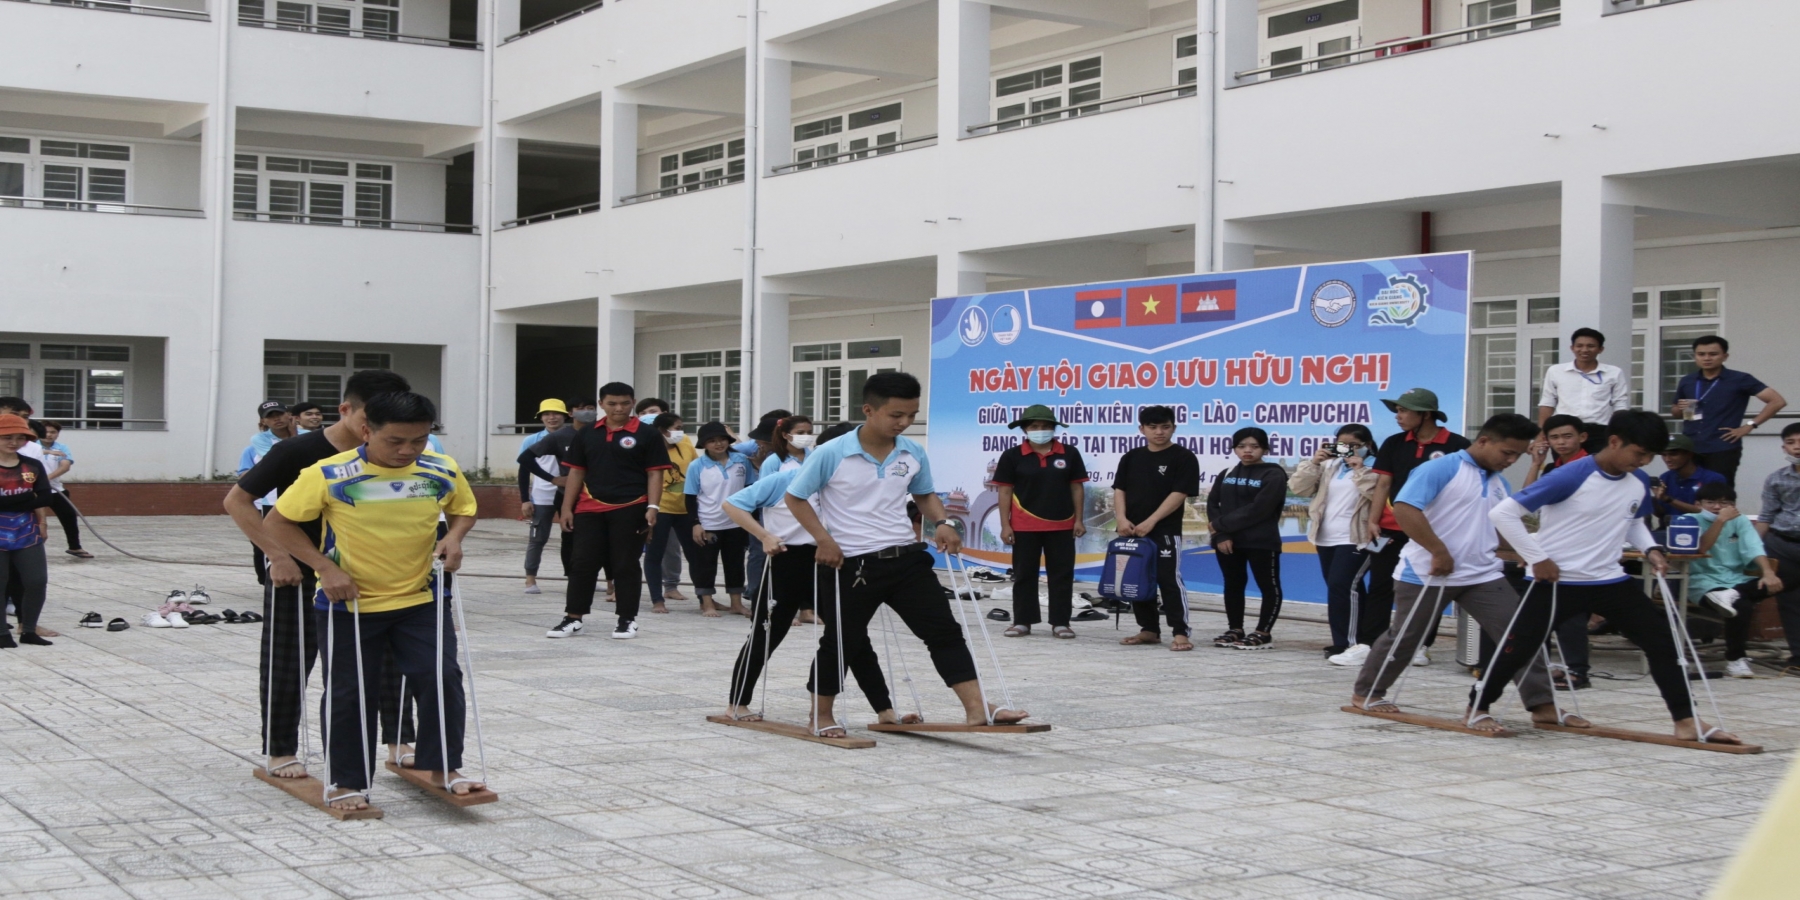 Sinh viên Việt Nam – Lào - Campuchia có nhiều hoạt động giao lưu mừng Tết cổ truyền của Campuchia và Lào